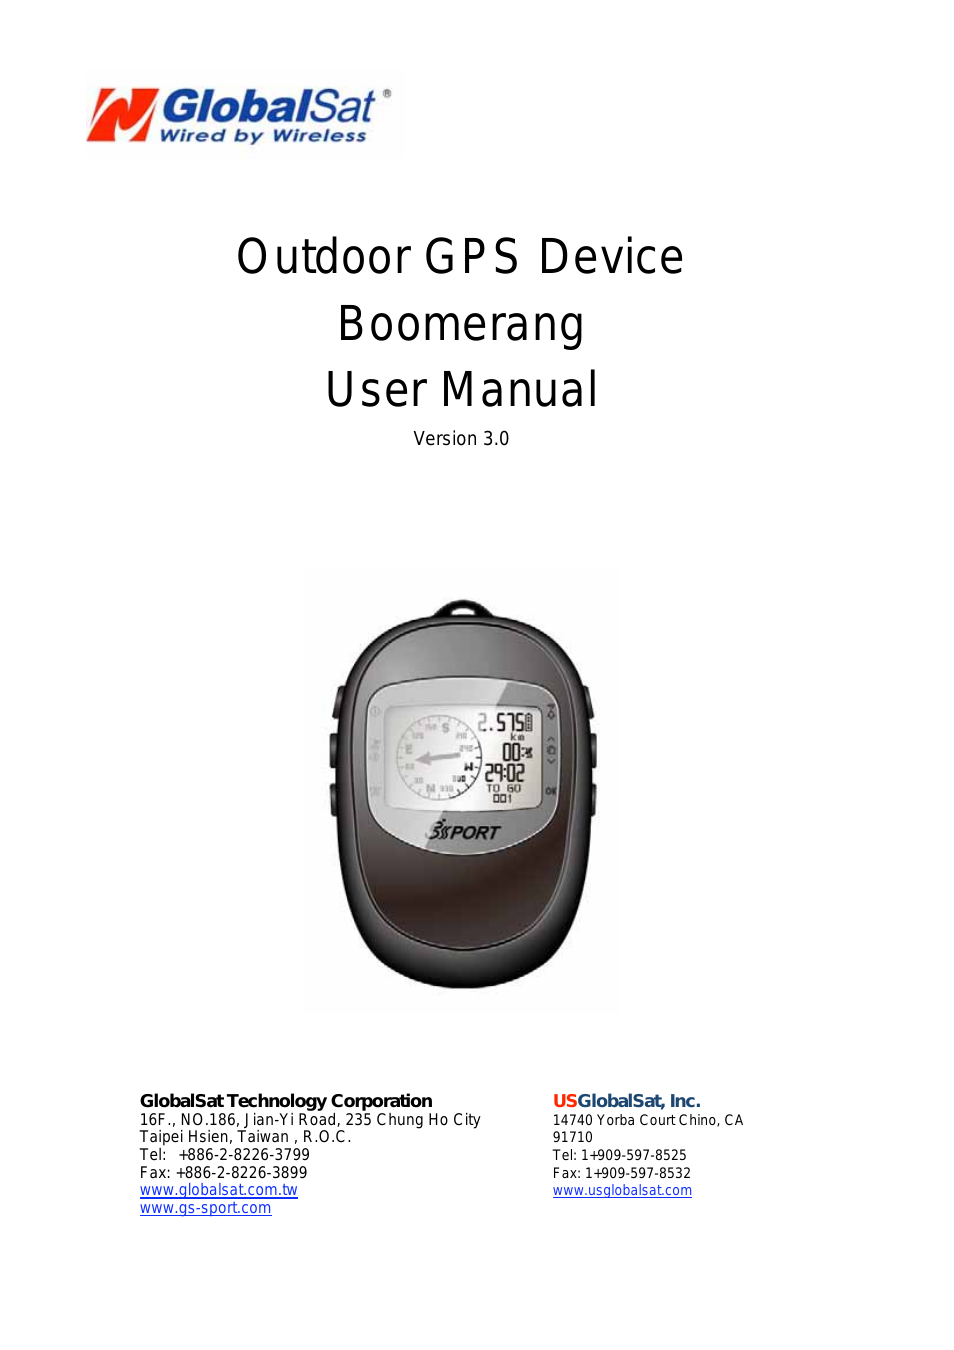 GH-561 User Manual